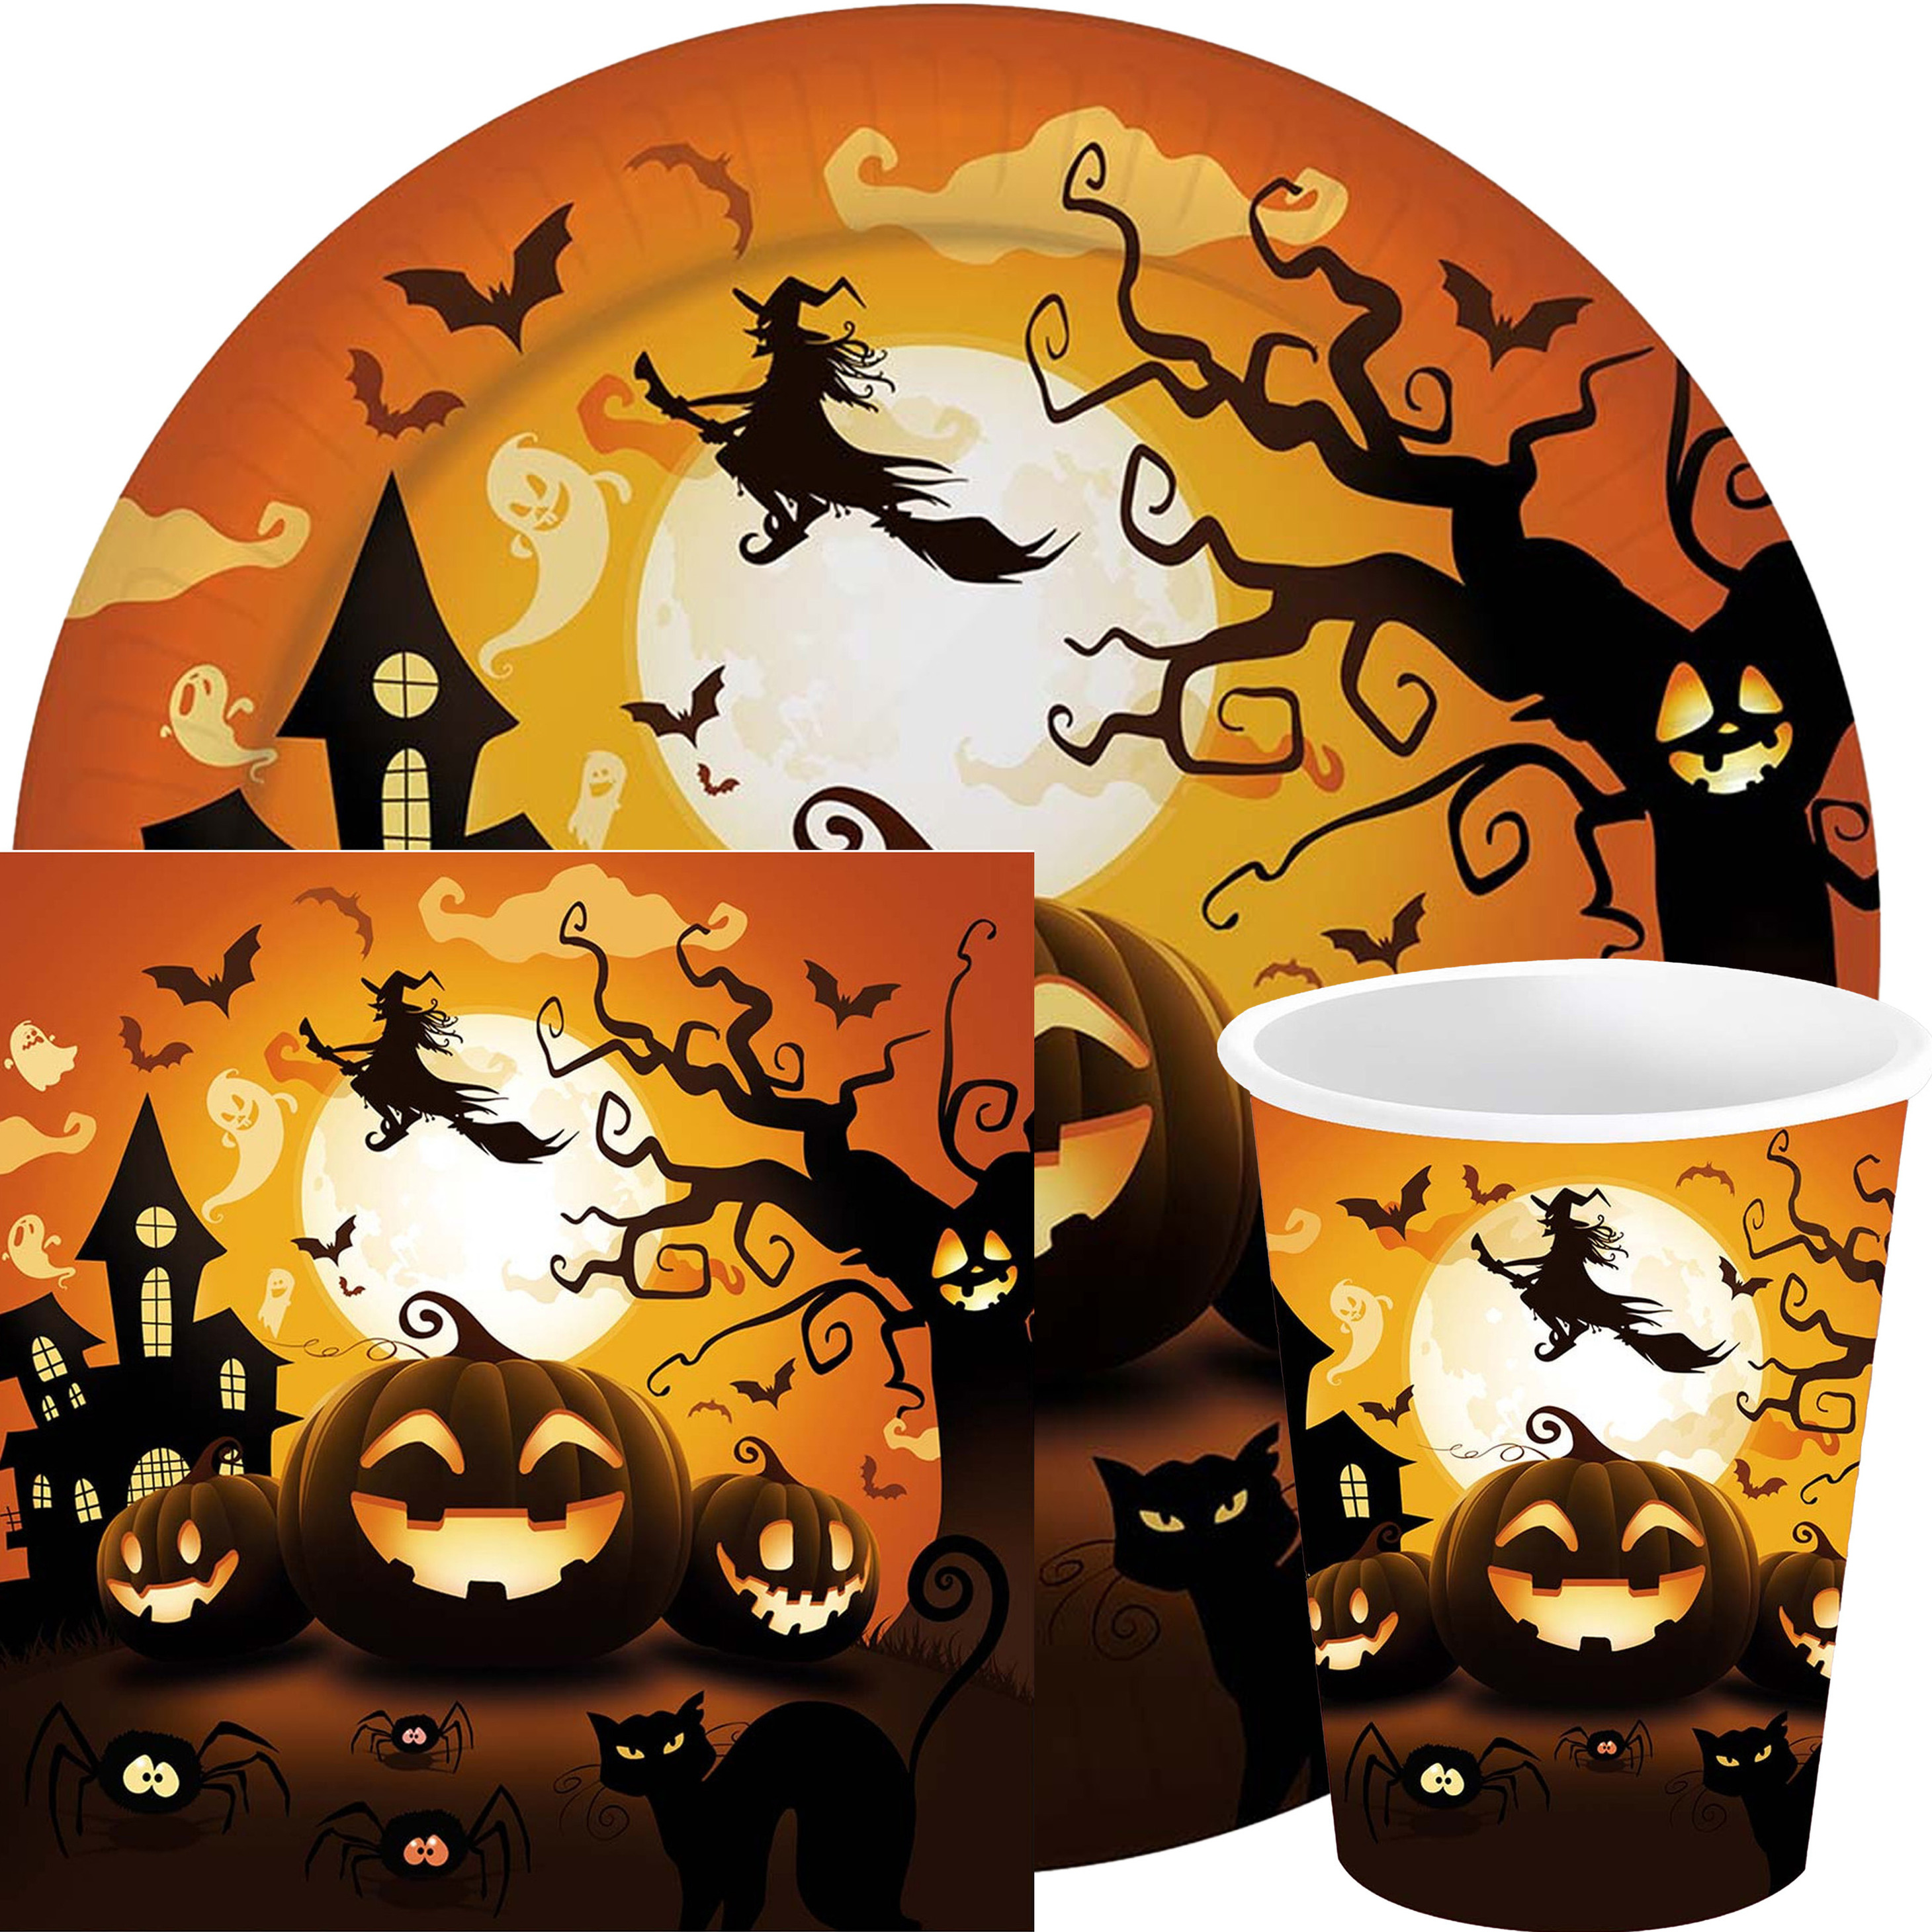 Halloween/horror pompoen feest servies set borden/bekers/servetten - 36x - zwart- papier